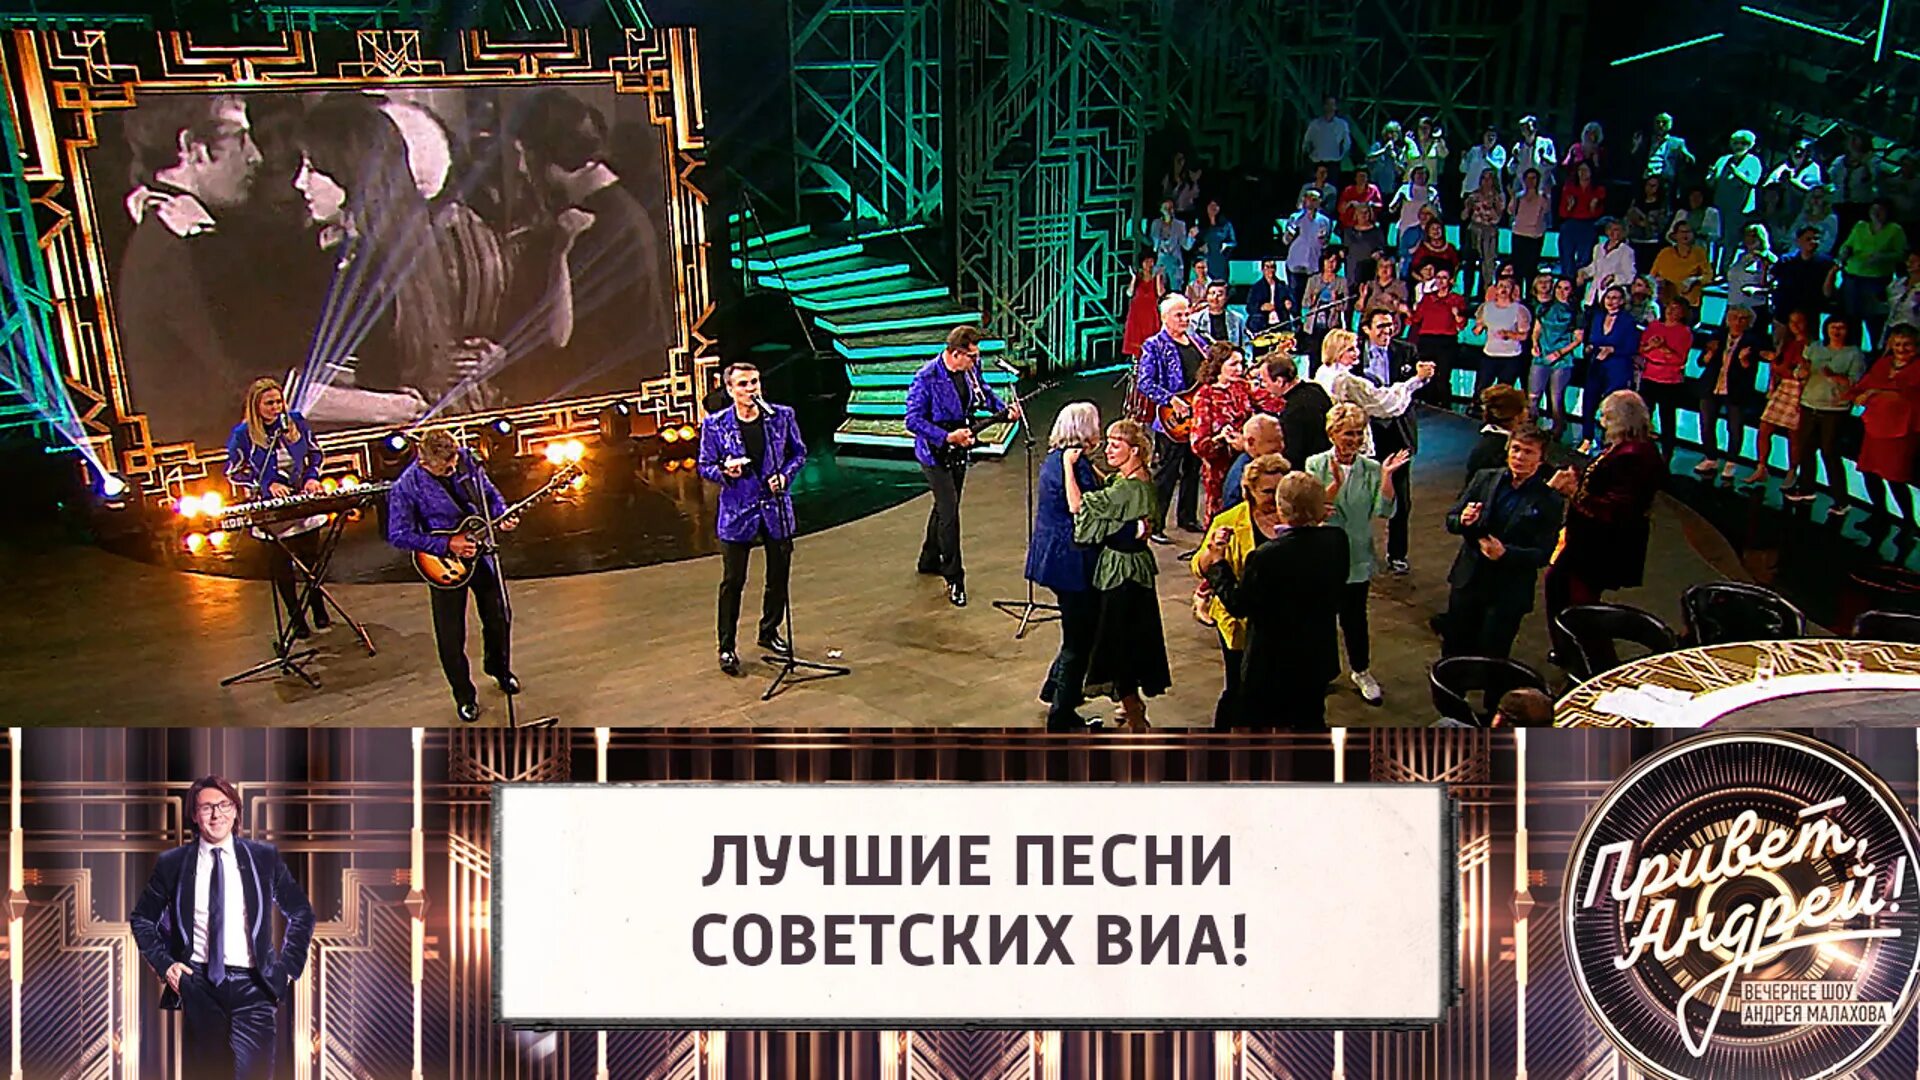 Россия 1 передачи песни